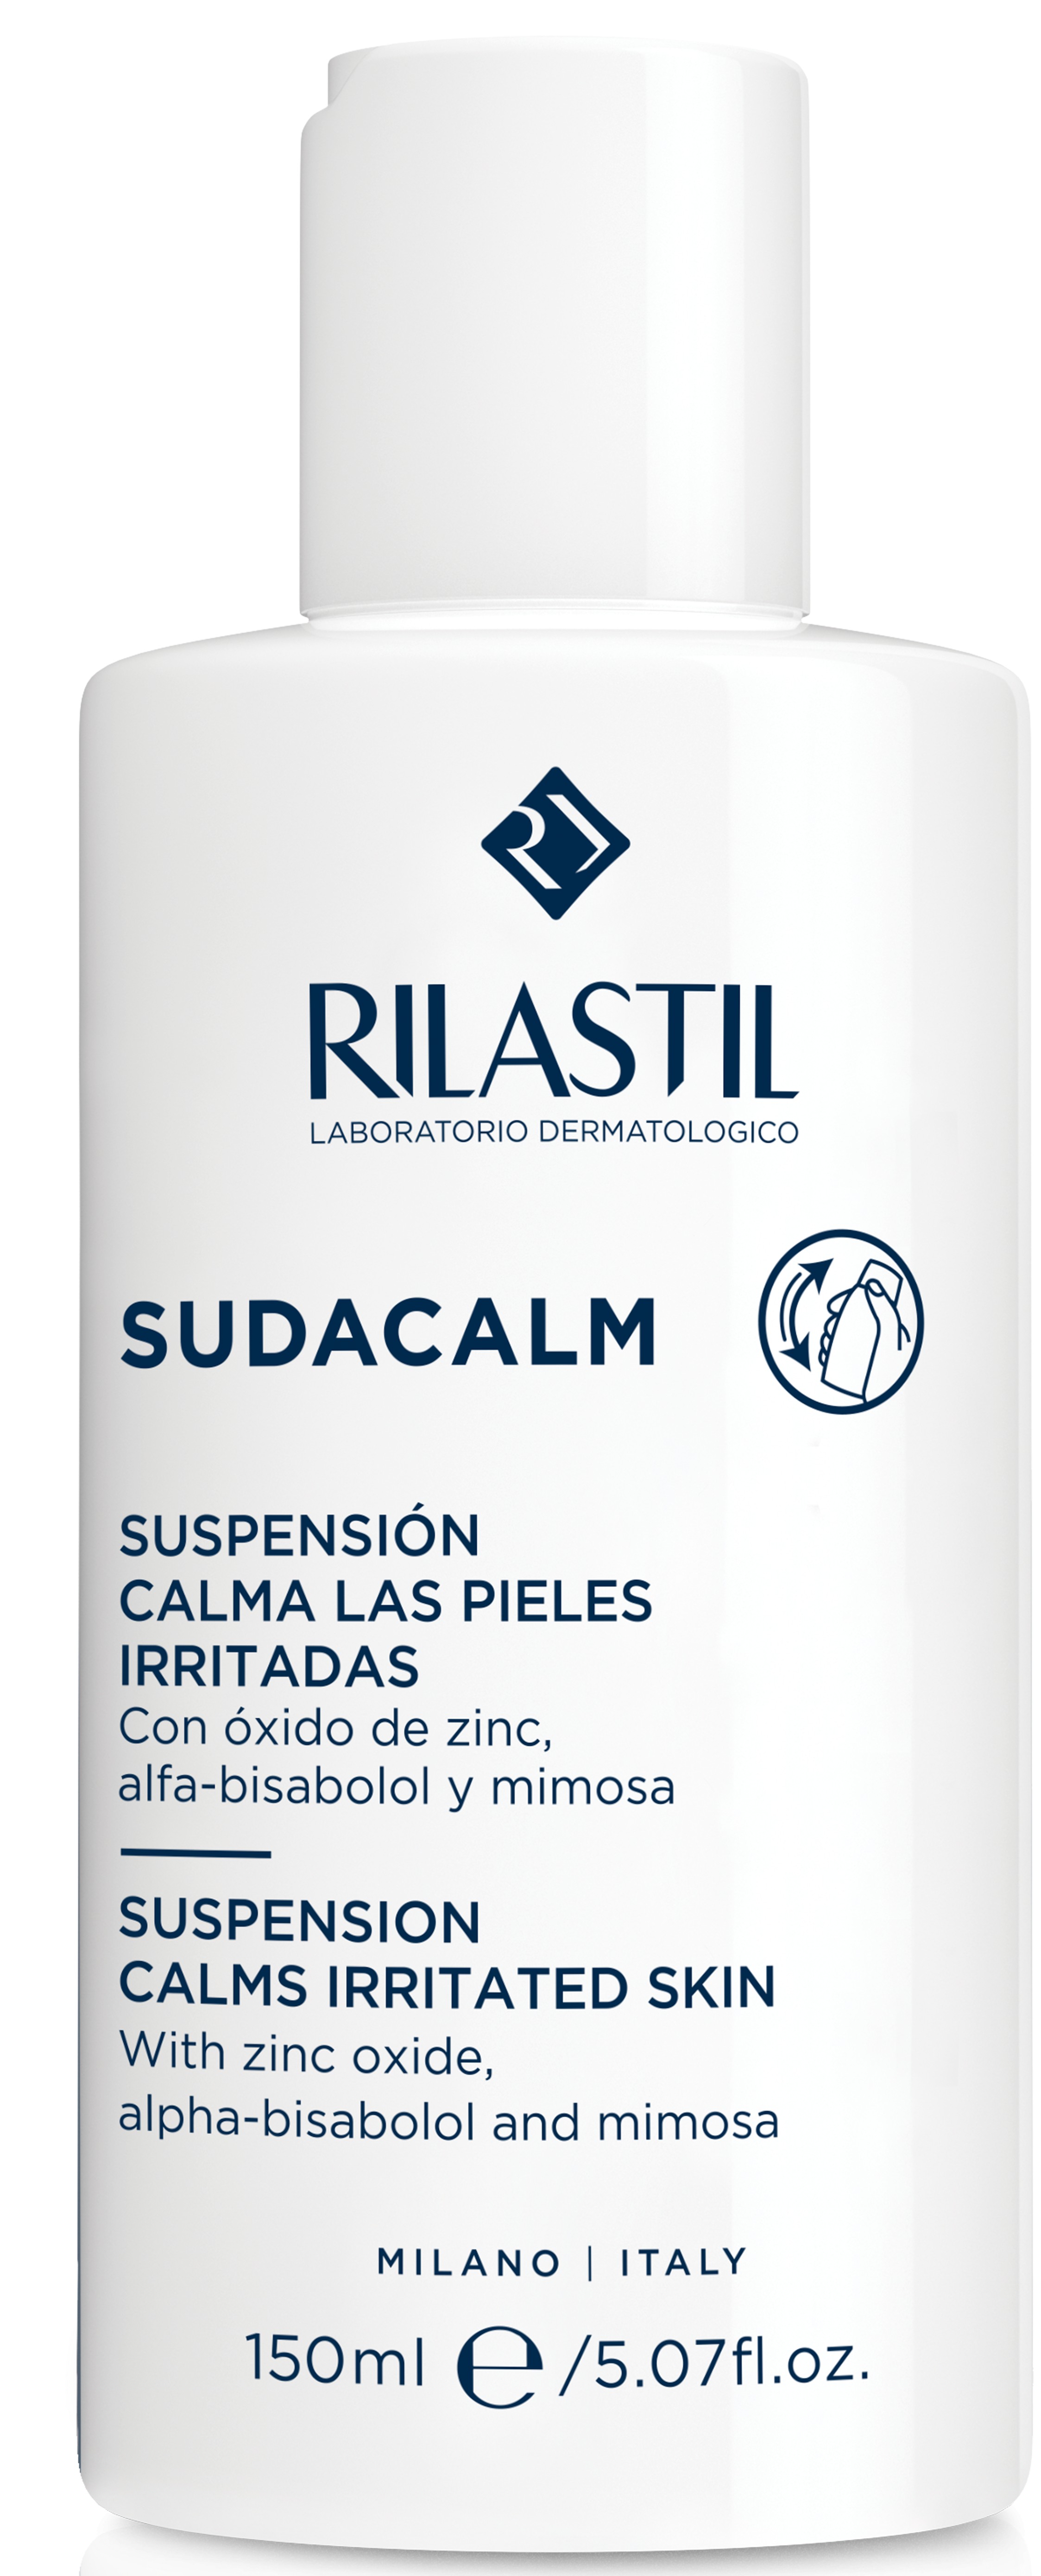 Rilastil Sudacalm Suspension, 150 ml.